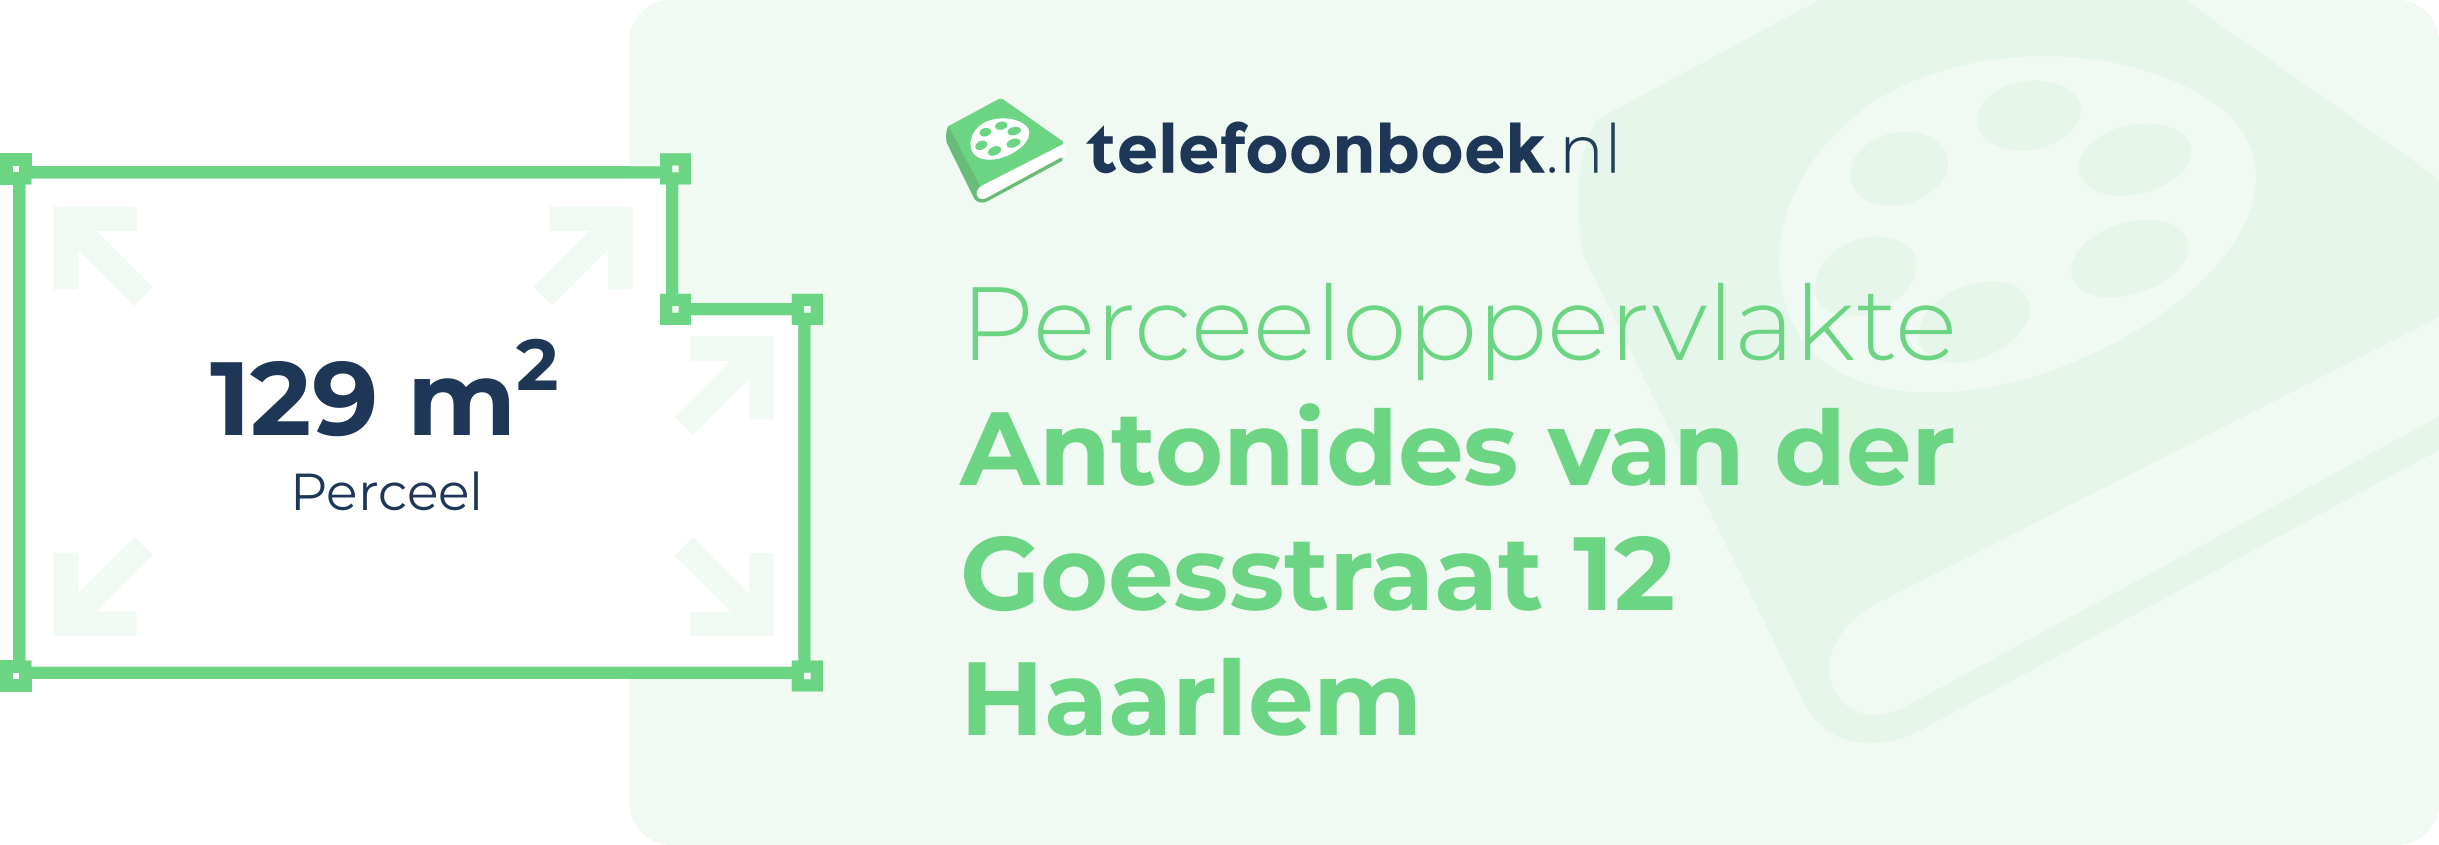 Perceeloppervlakte Antonides Van Der Goesstraat 12 Haarlem